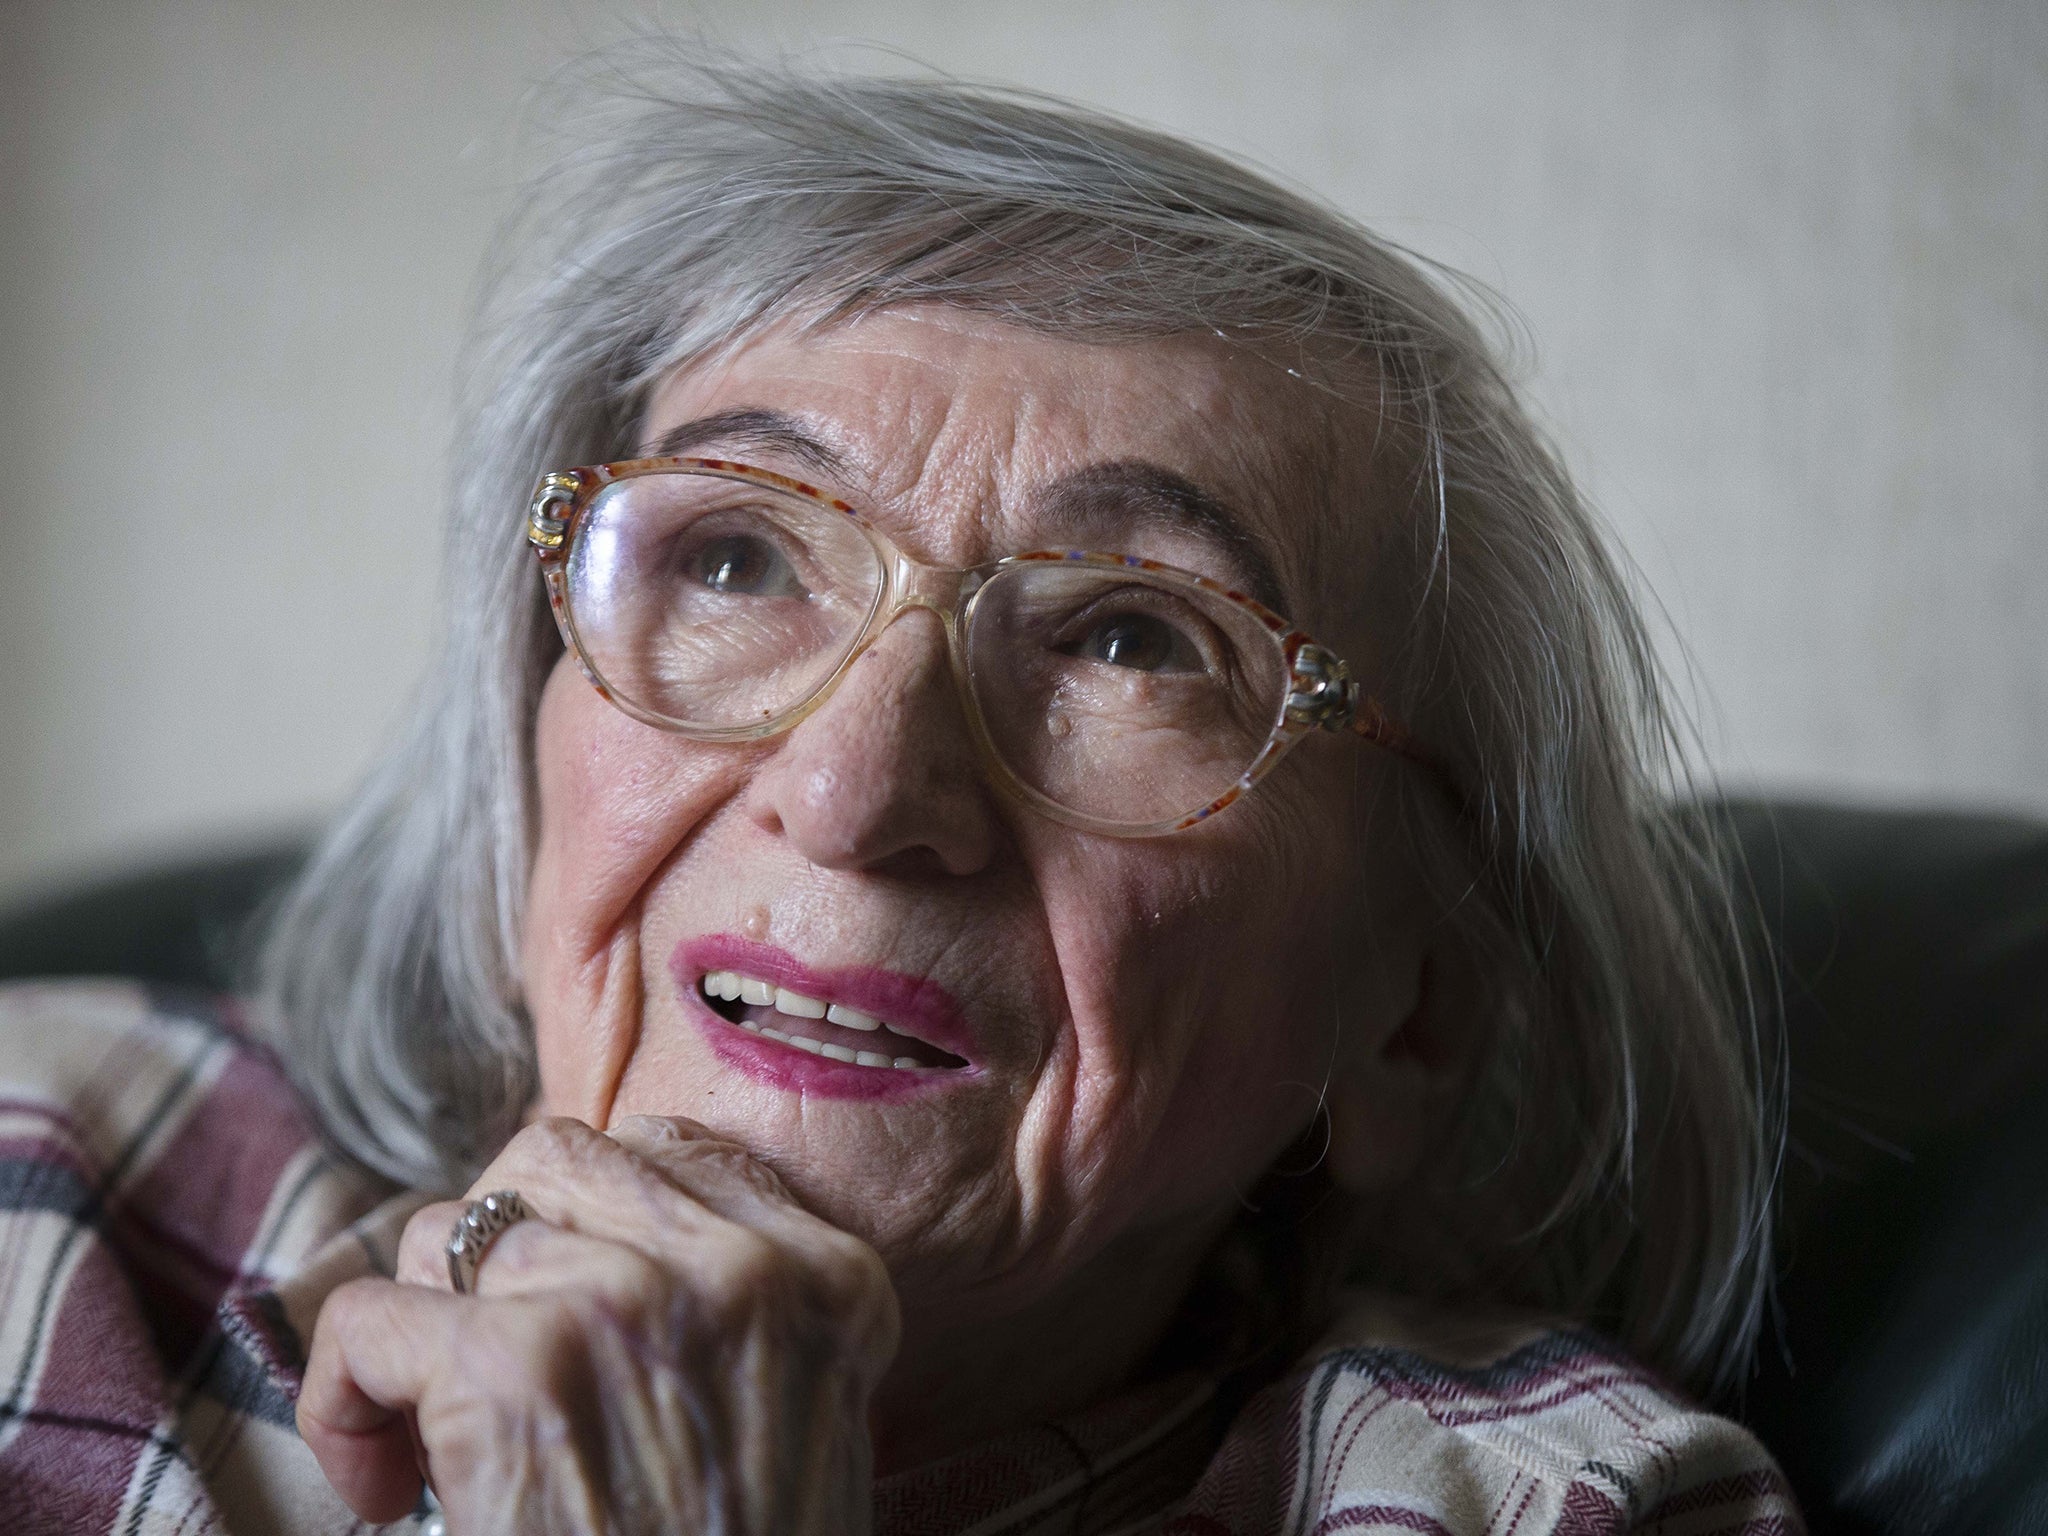 Margot Wölk kept her wartime ordeal secret until last year